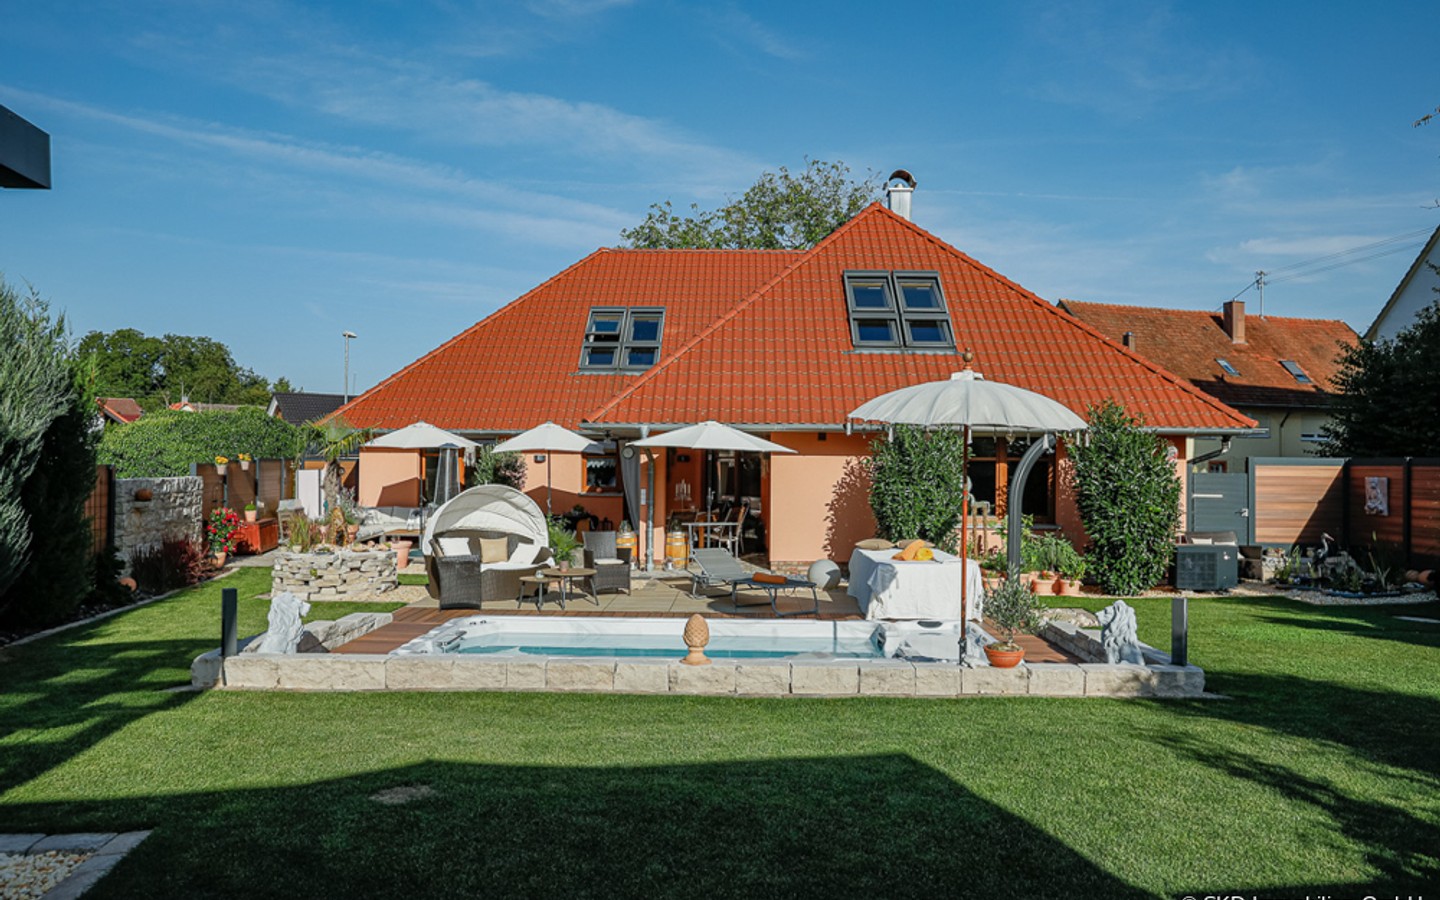 Viel Platz... - Mediterranes Wohnparadies in Aglasterhausen: Ein- bis Zweifamilienhaus mit Pool und Gartenparadies